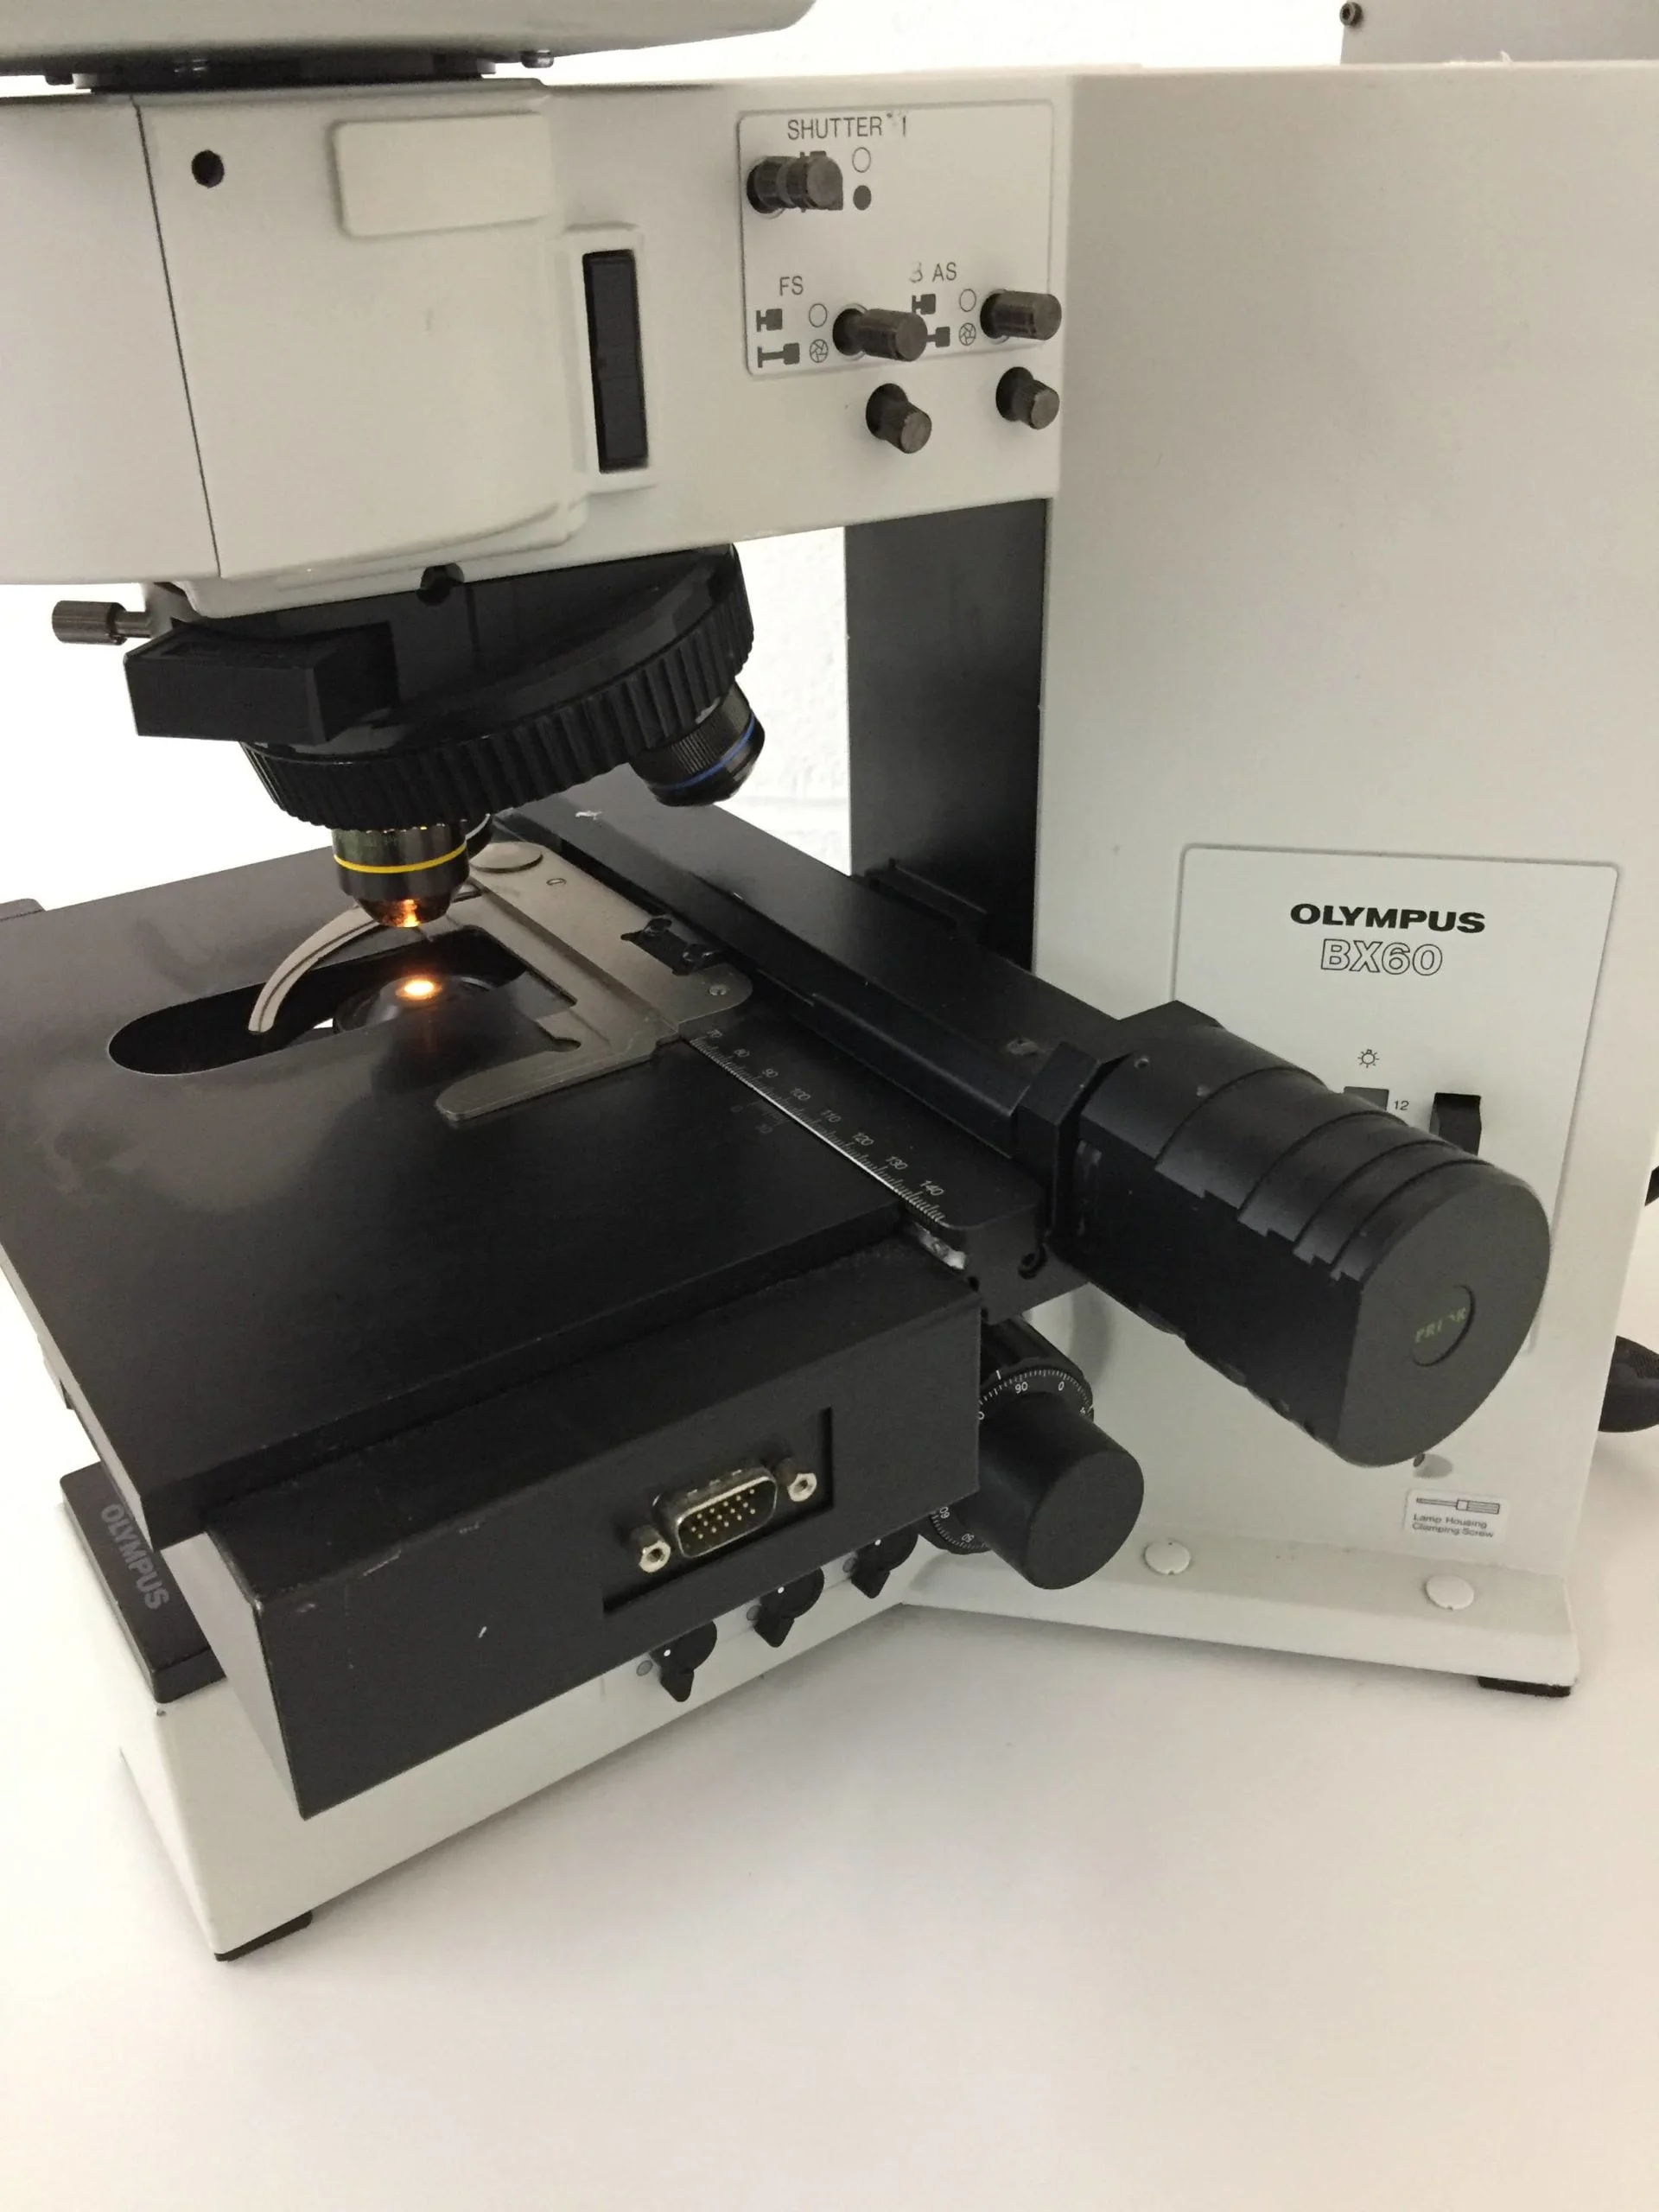 olympus bx60f5 fluorescence microscope with jenoptik progres mf camera